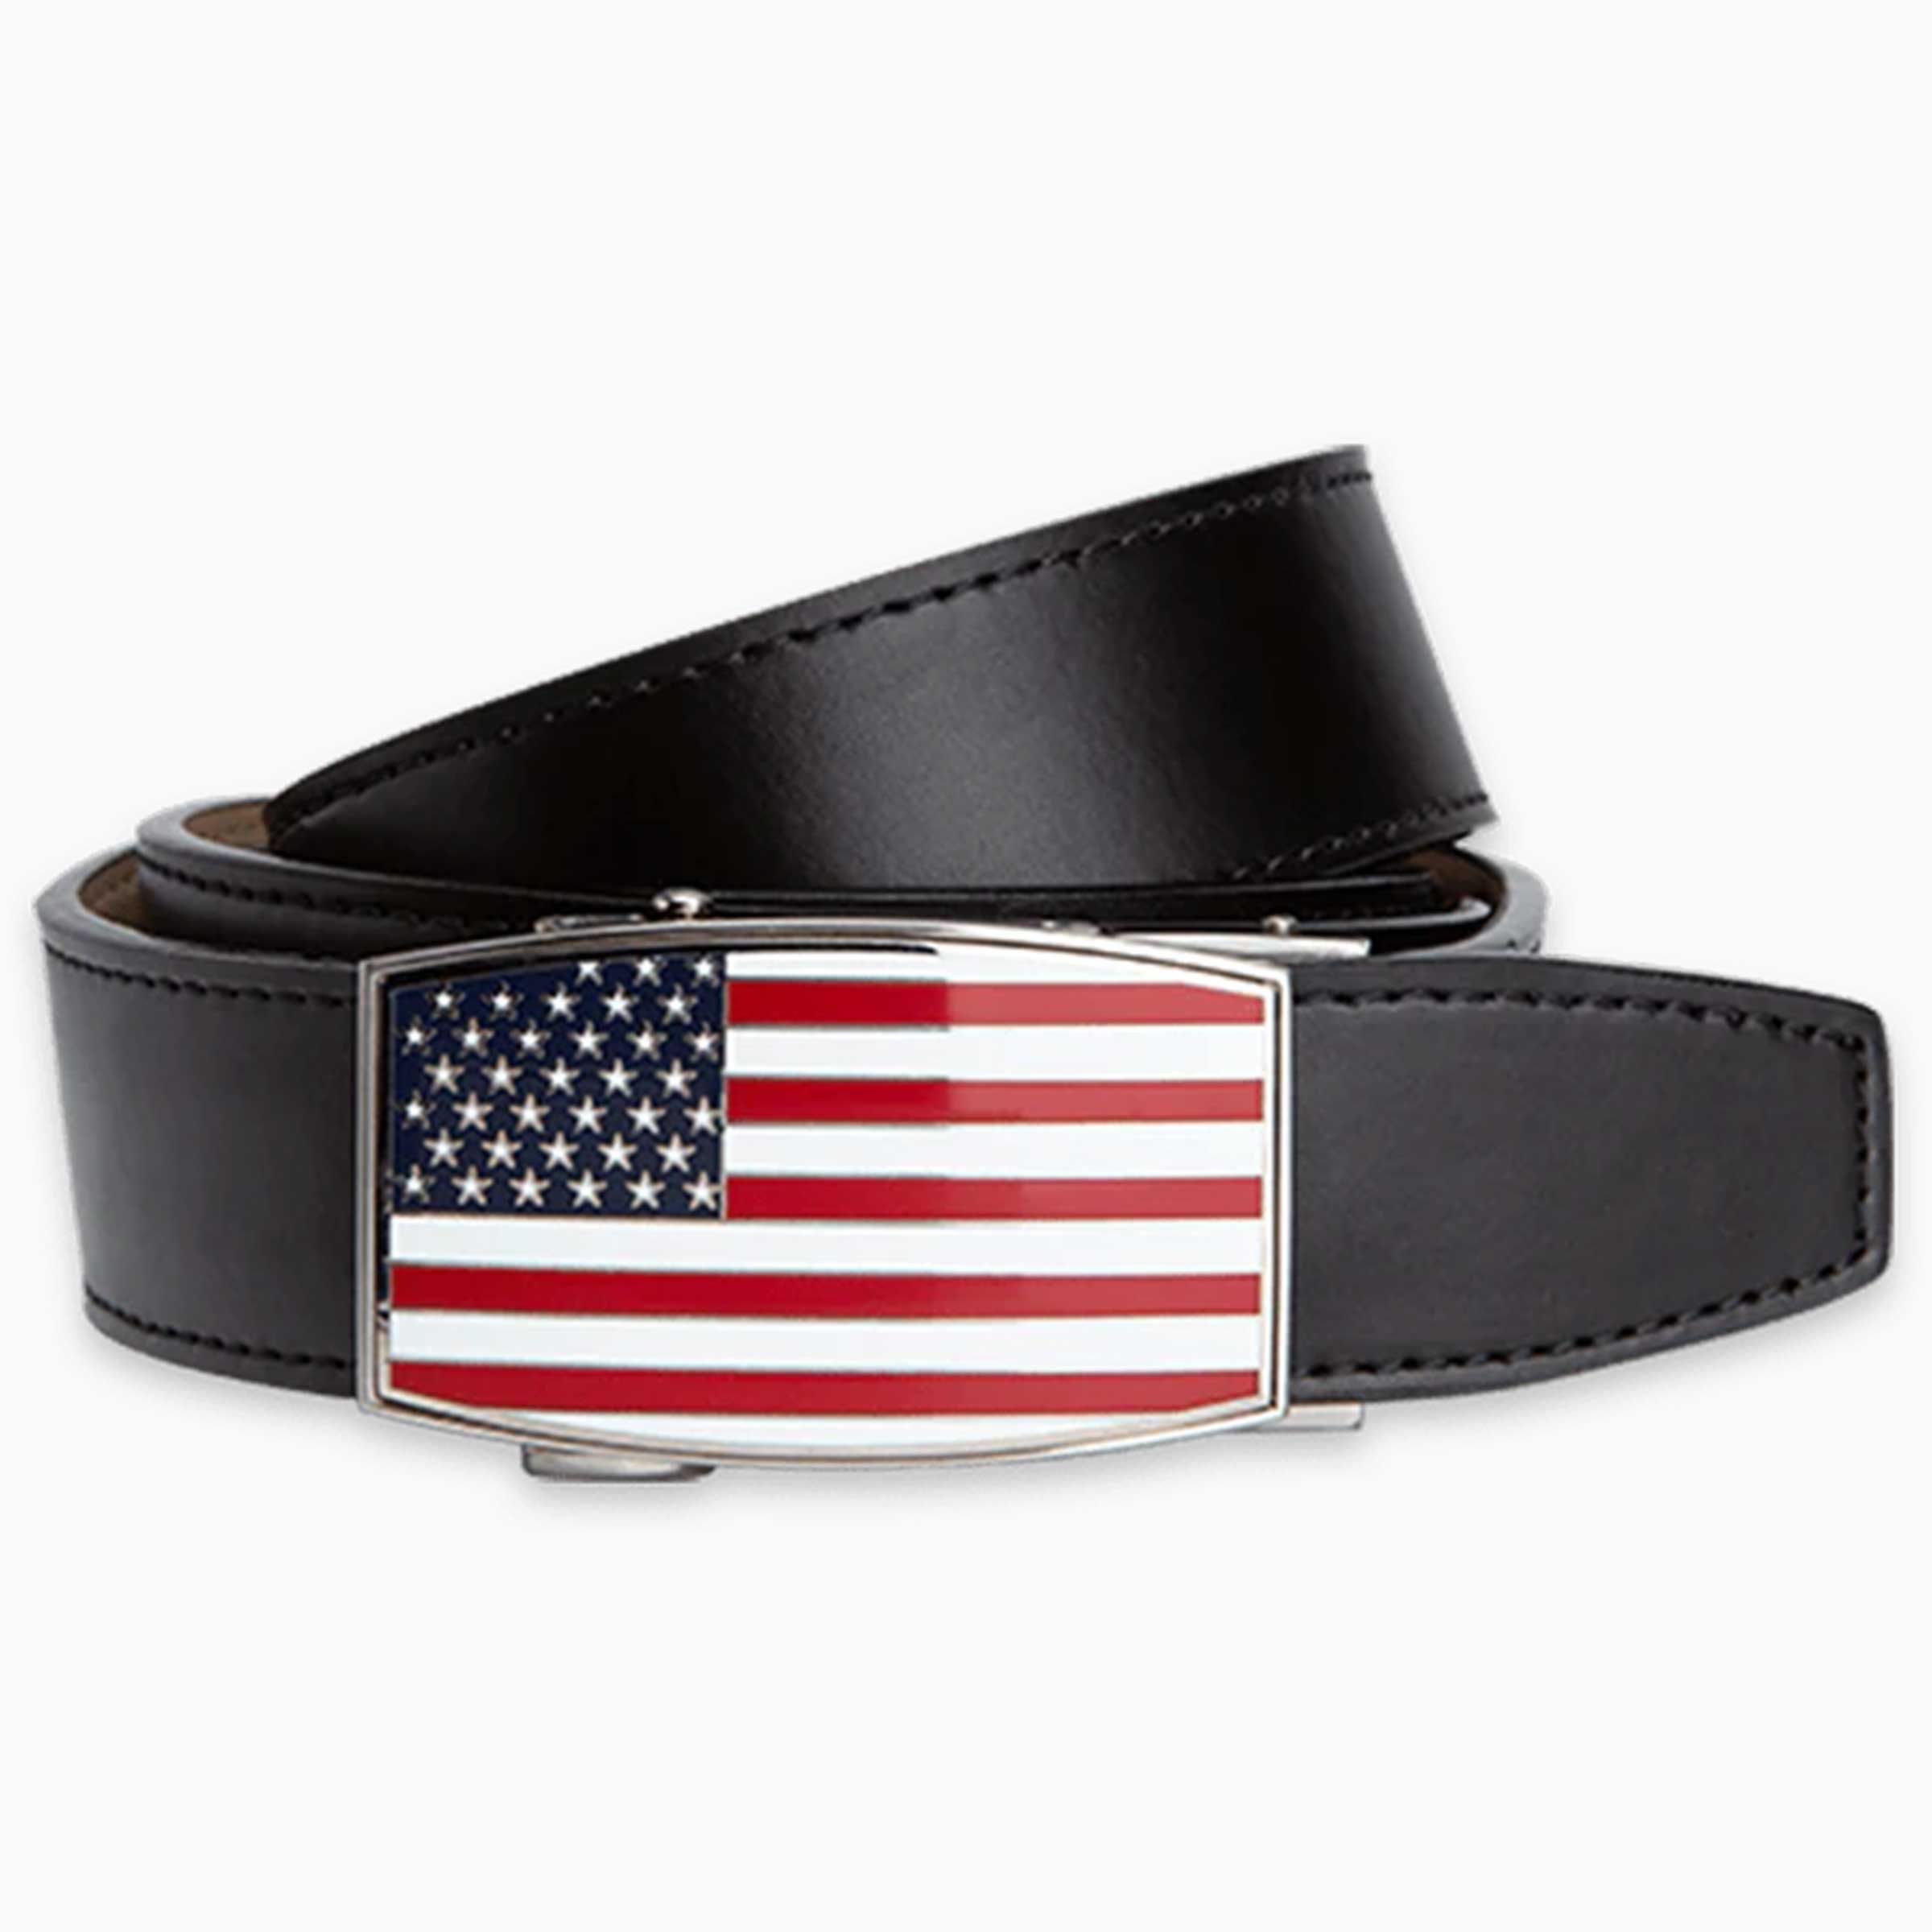 USA Flag Aston Black Golf Belt, 1.38" [35mm]